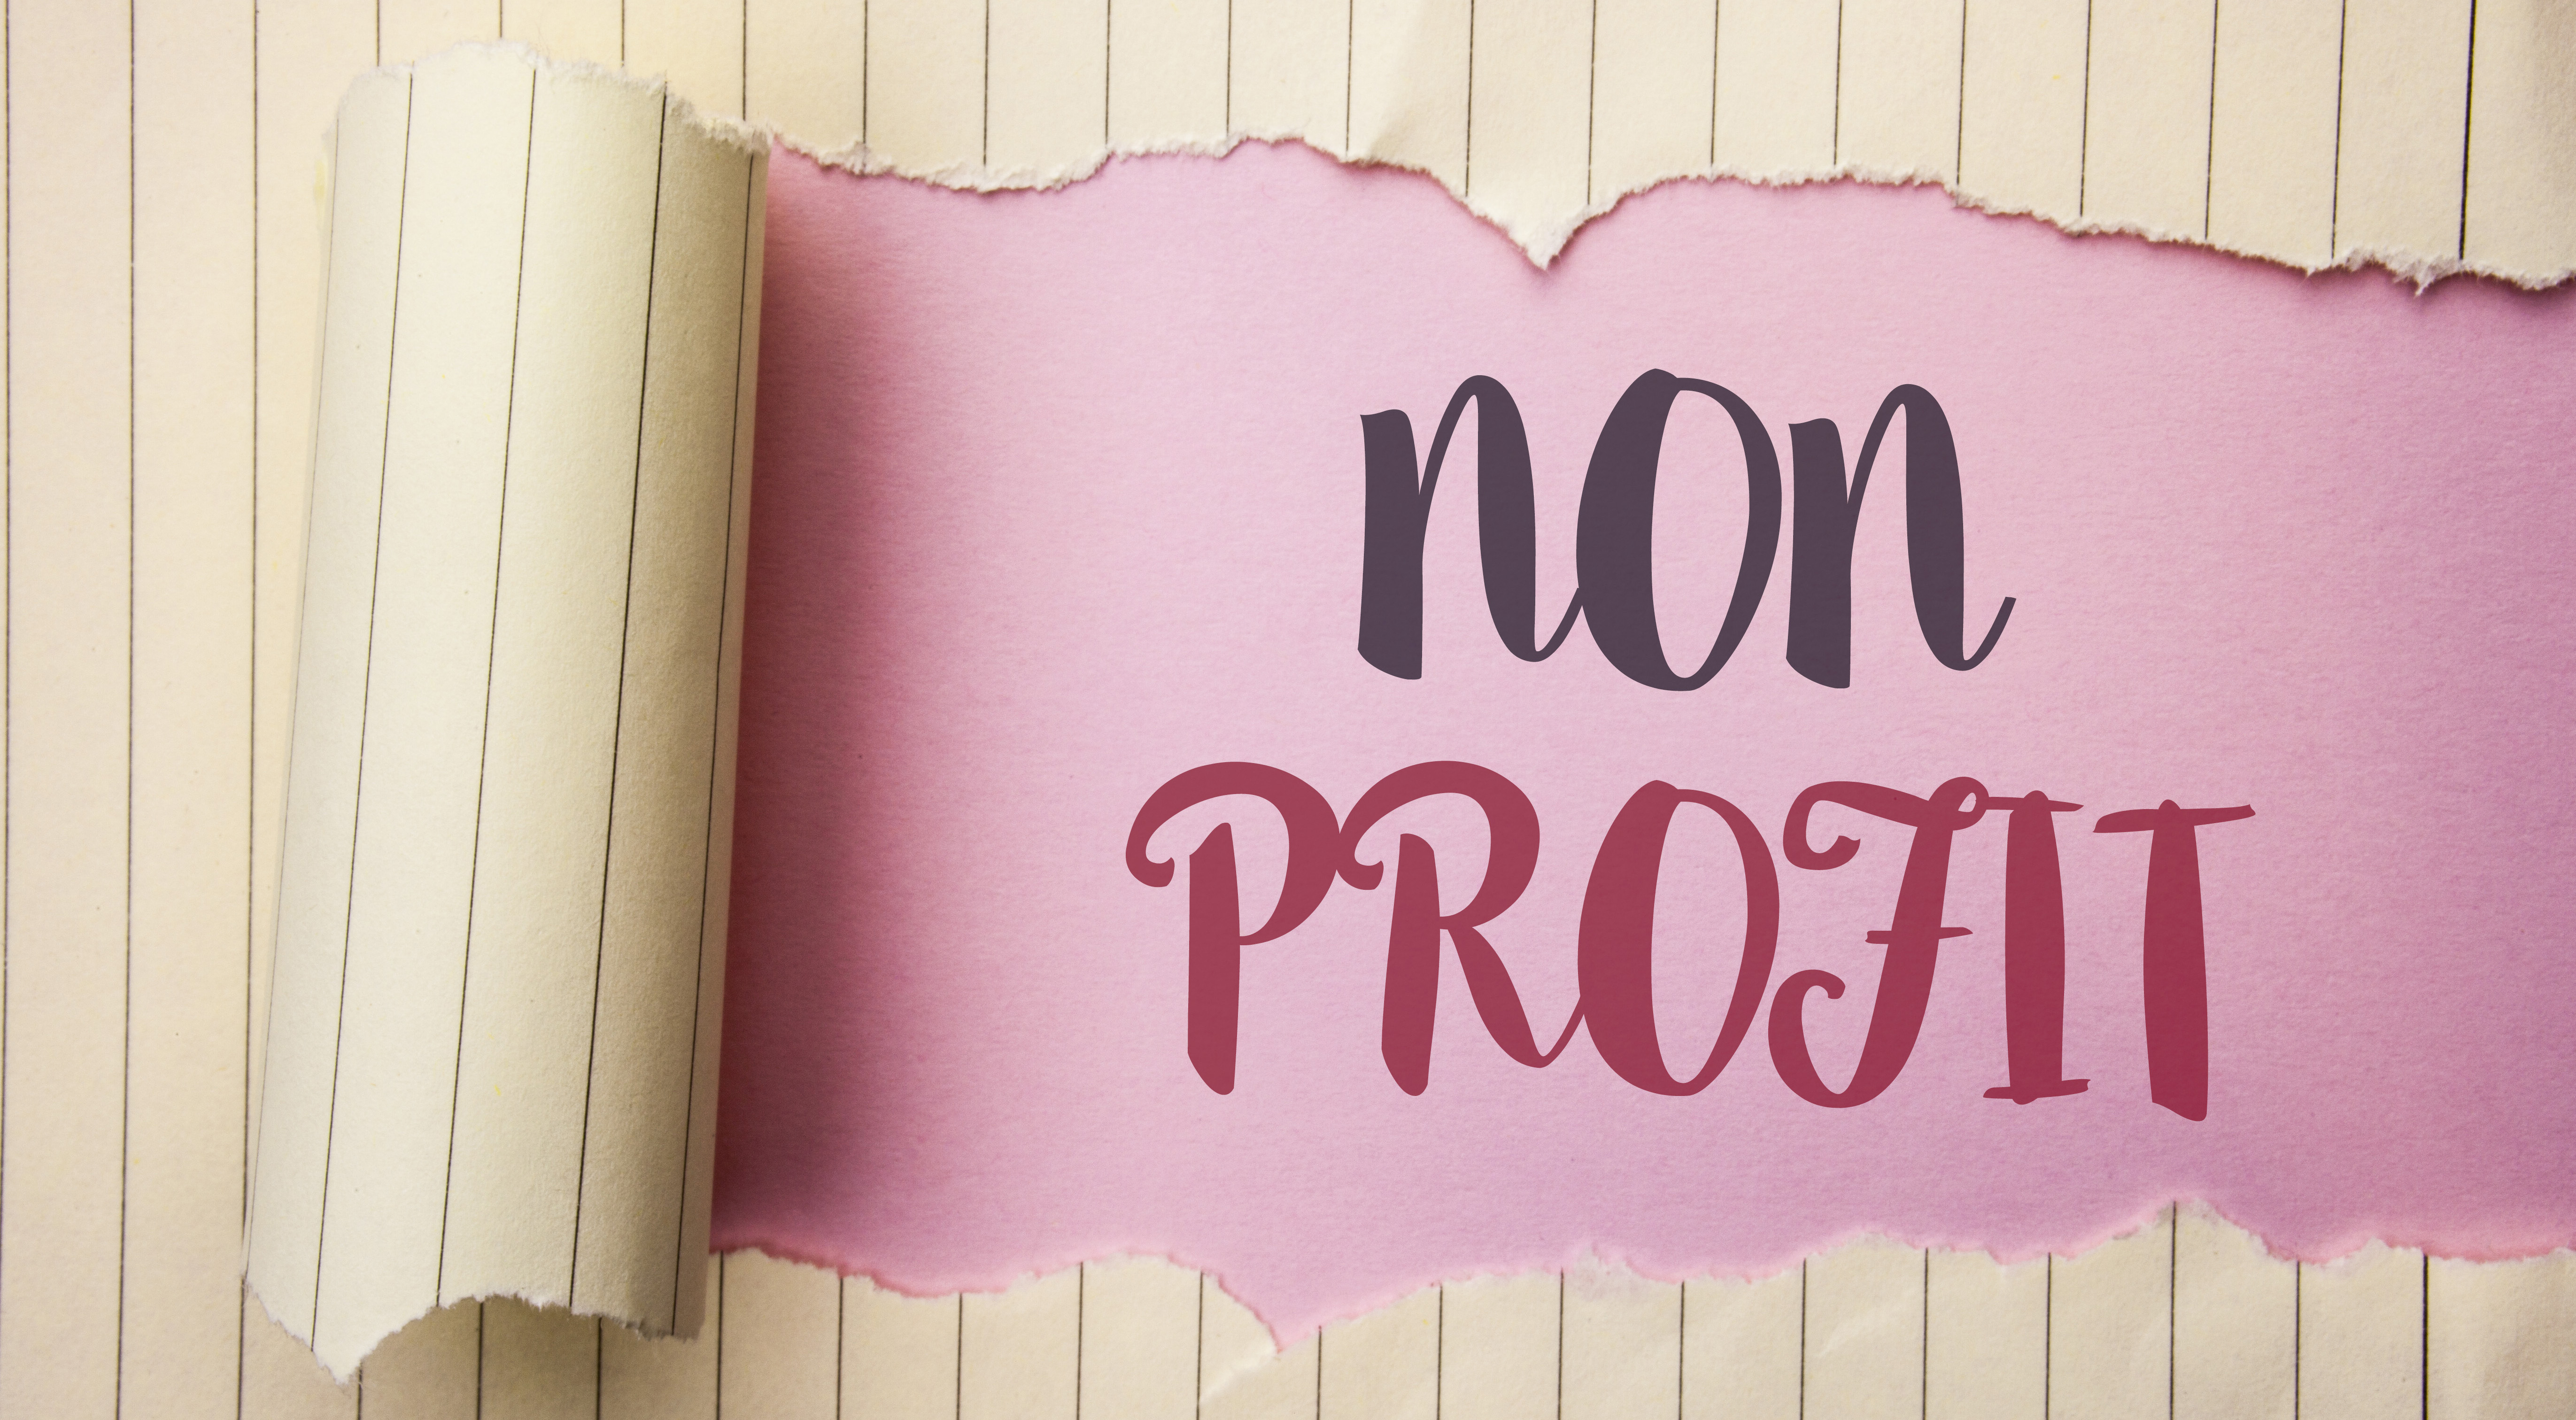 Scritta "non profit" su fondo rosa